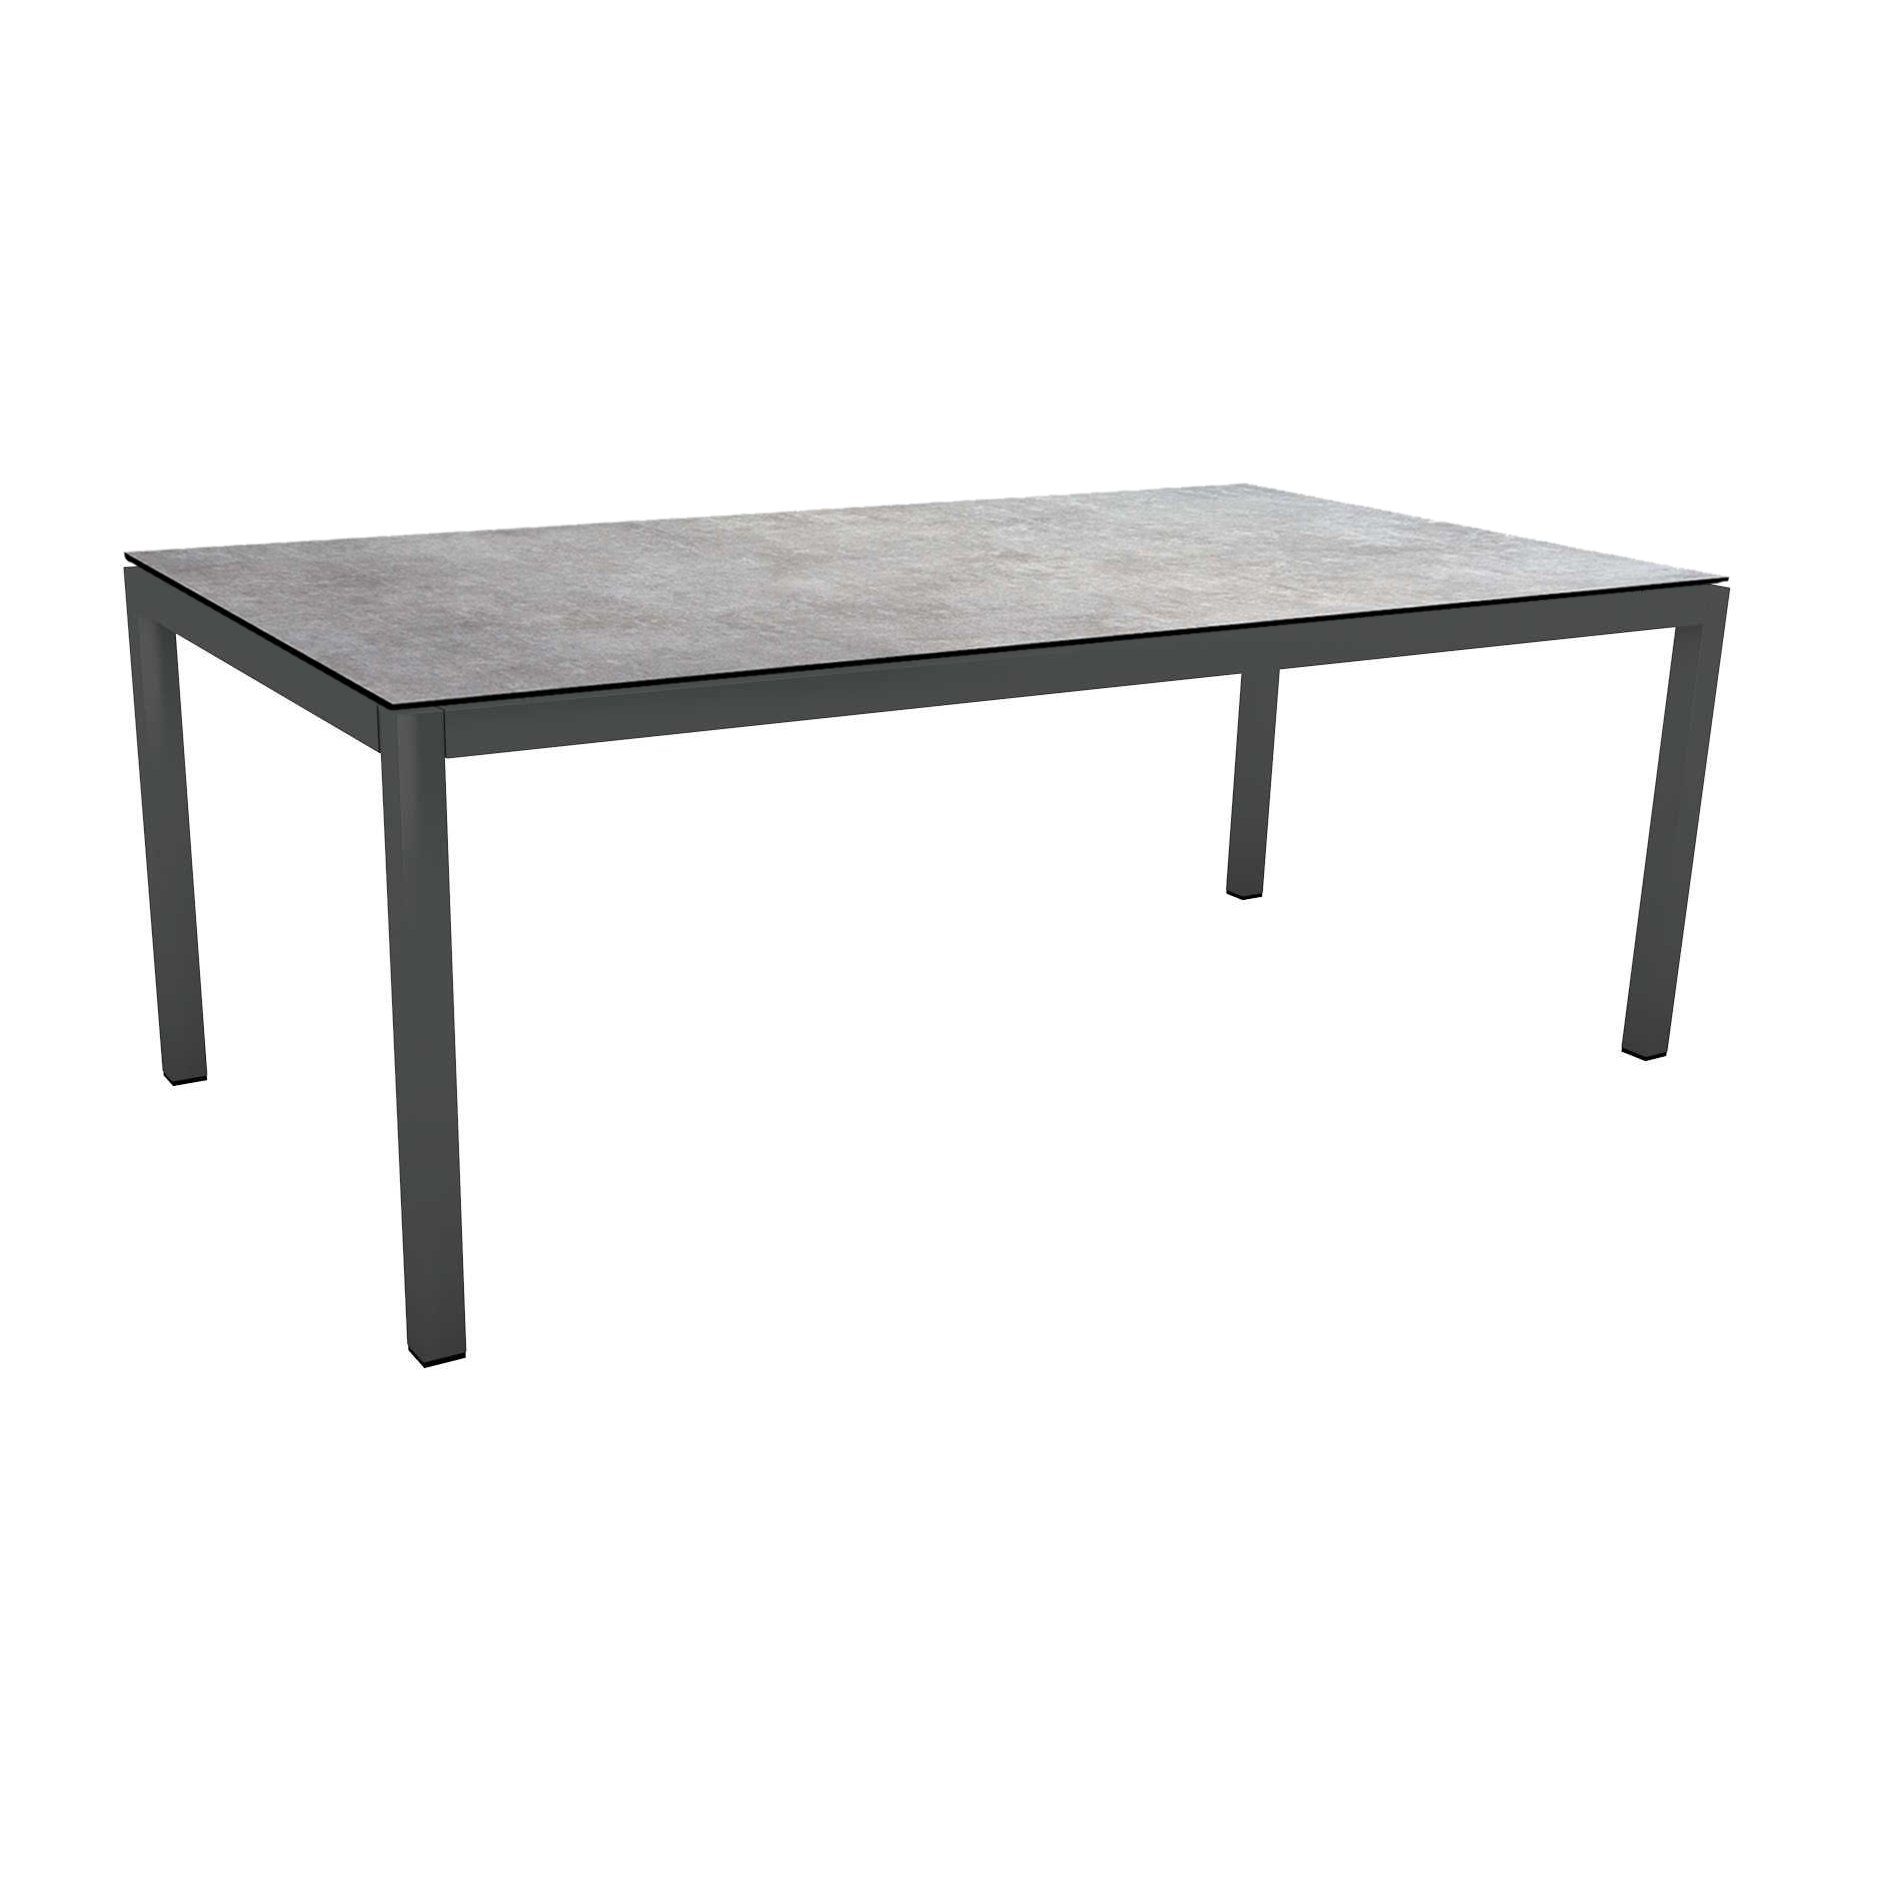 Stern Tischsystem Gartentisch, Gestell Aluminium anthrazit, Tischplatte HPL Metallic grau, Maße: 200x100 cm